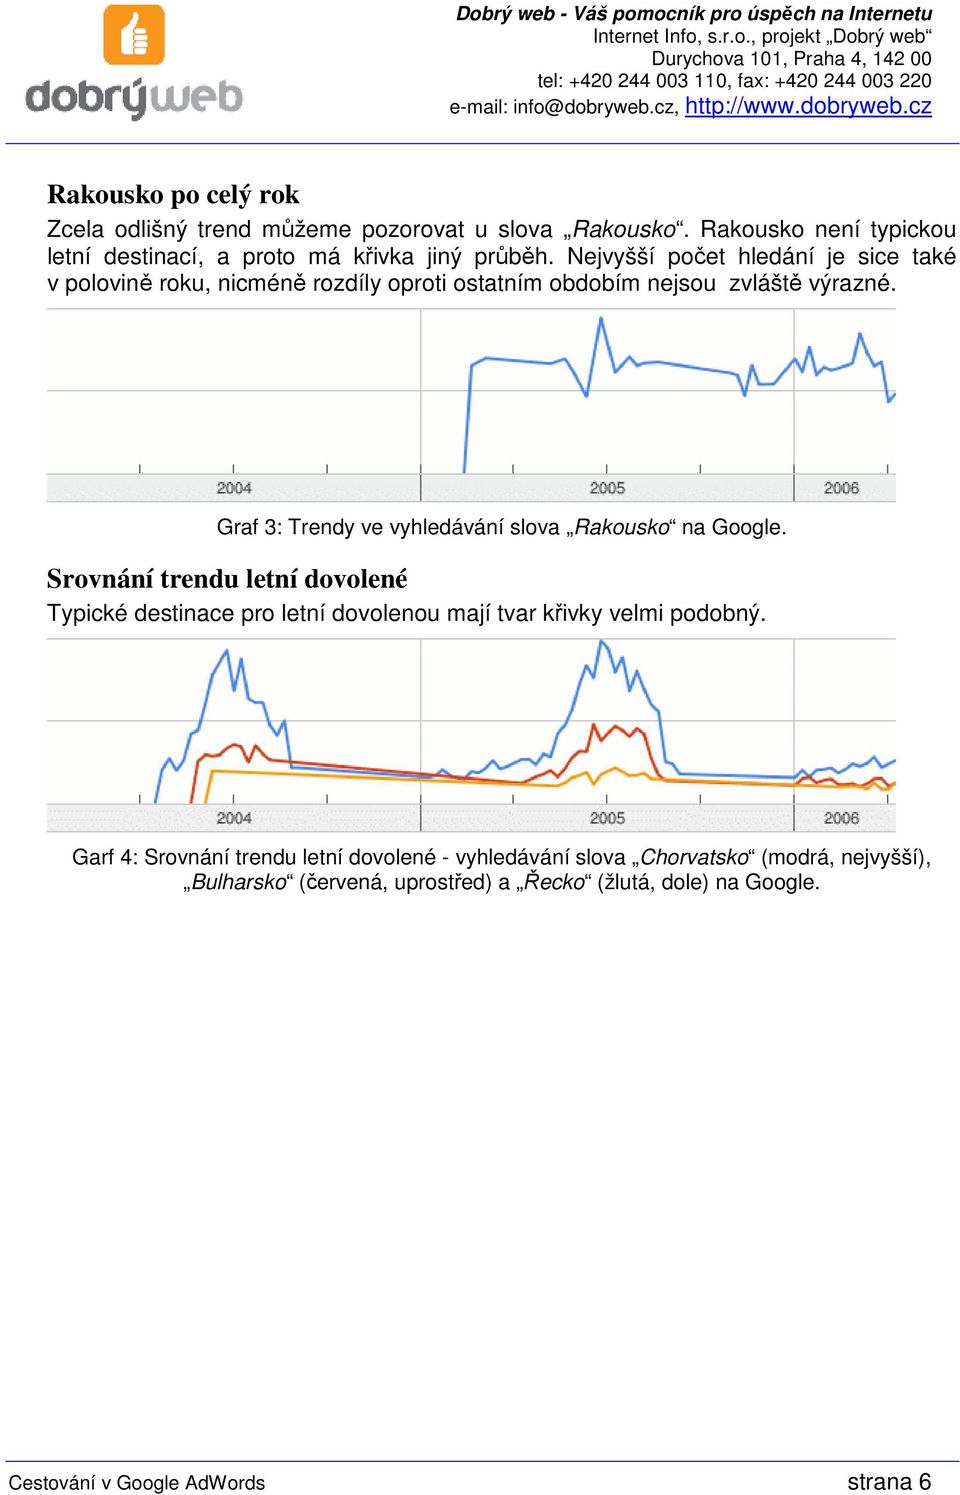 Graf 3: Trendy ve vyhledávání slova Rakousko na Google.